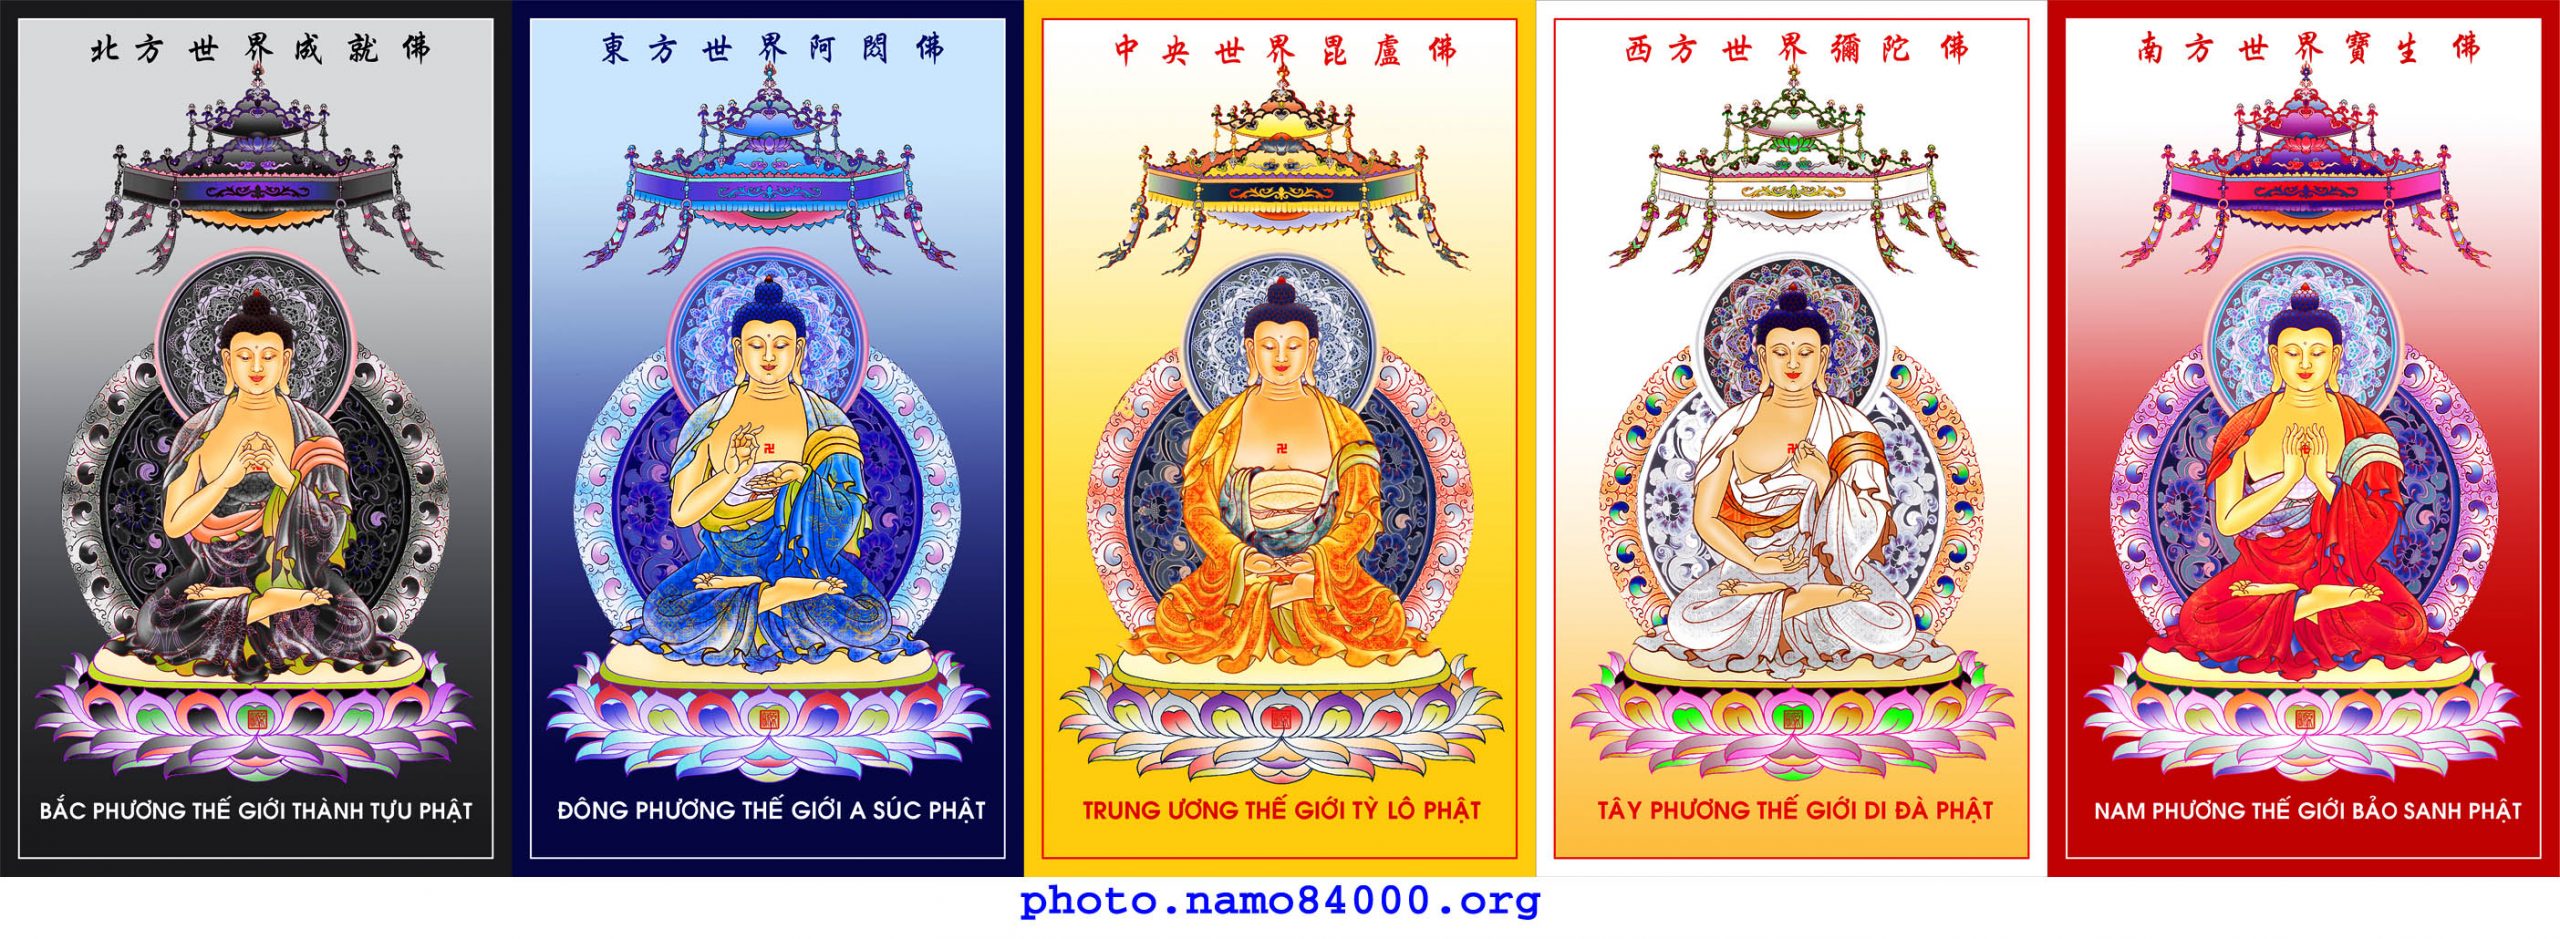 Ngũ Phương Phật – Đức Phật Năm Phương – Five Tathāgatas